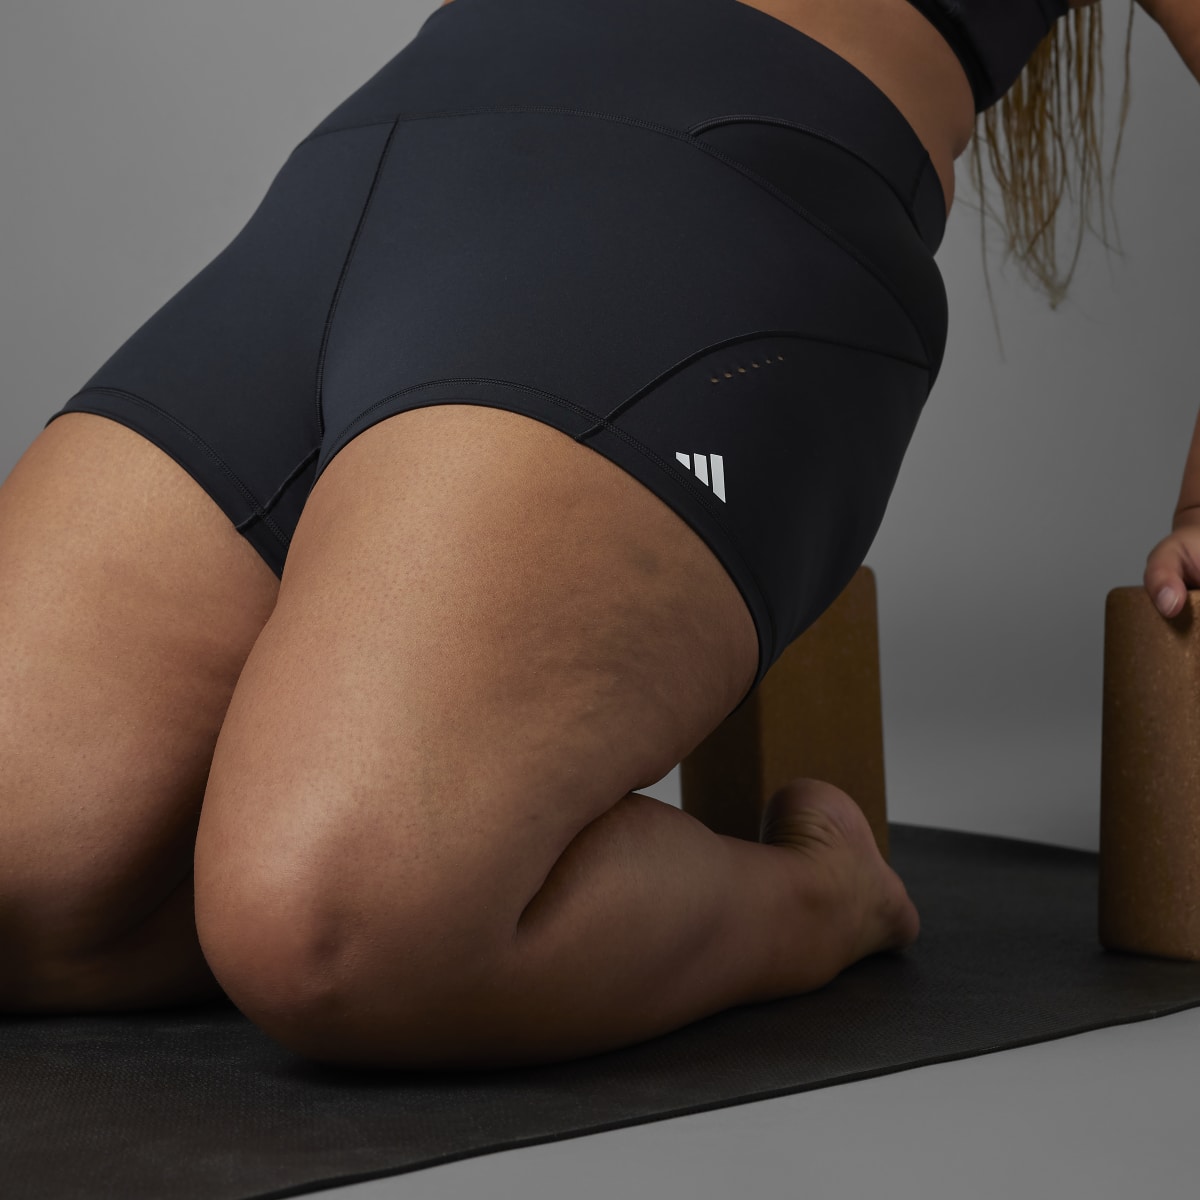 Adidas Collective Power Yoga Studio kurze Leggings – Große Größen. 9